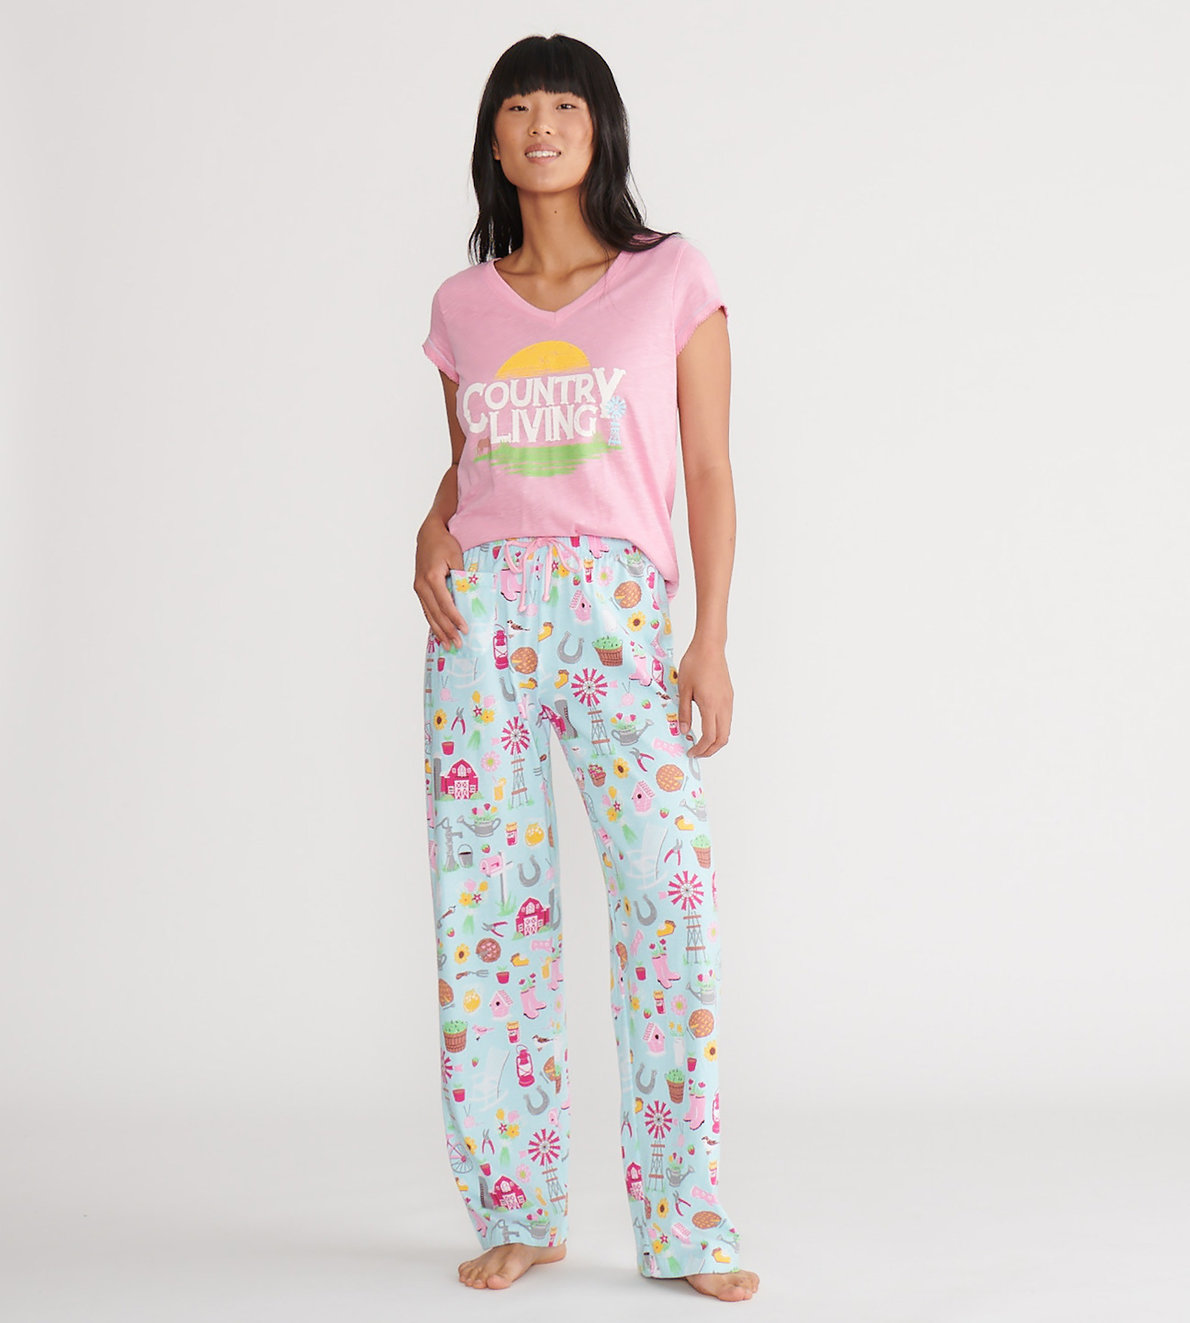 Agrandir l'image de Pantalon de pyjama en jersey pour femme – Vie de campagne